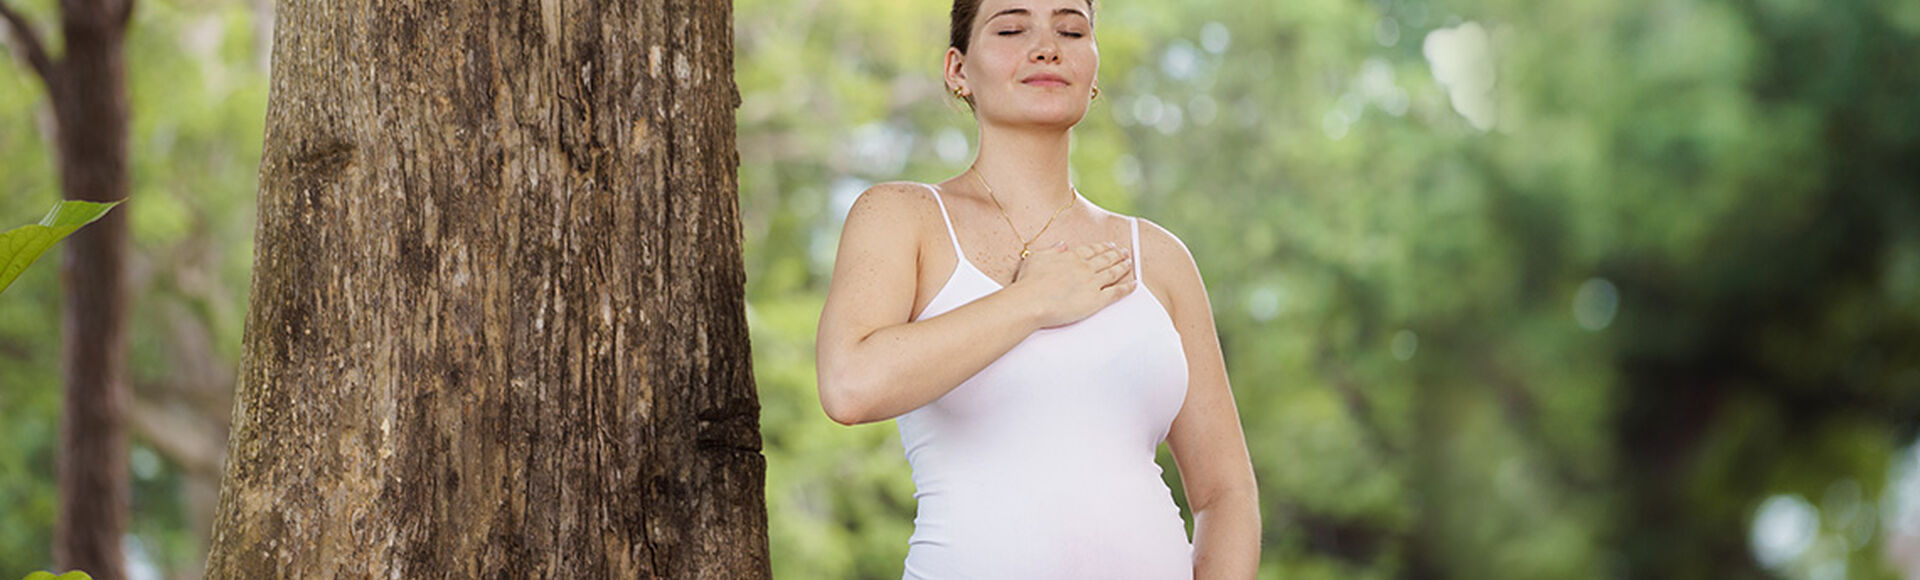 Tu cuerpo en la semana 26 de embarazo | by Huggies Argentina